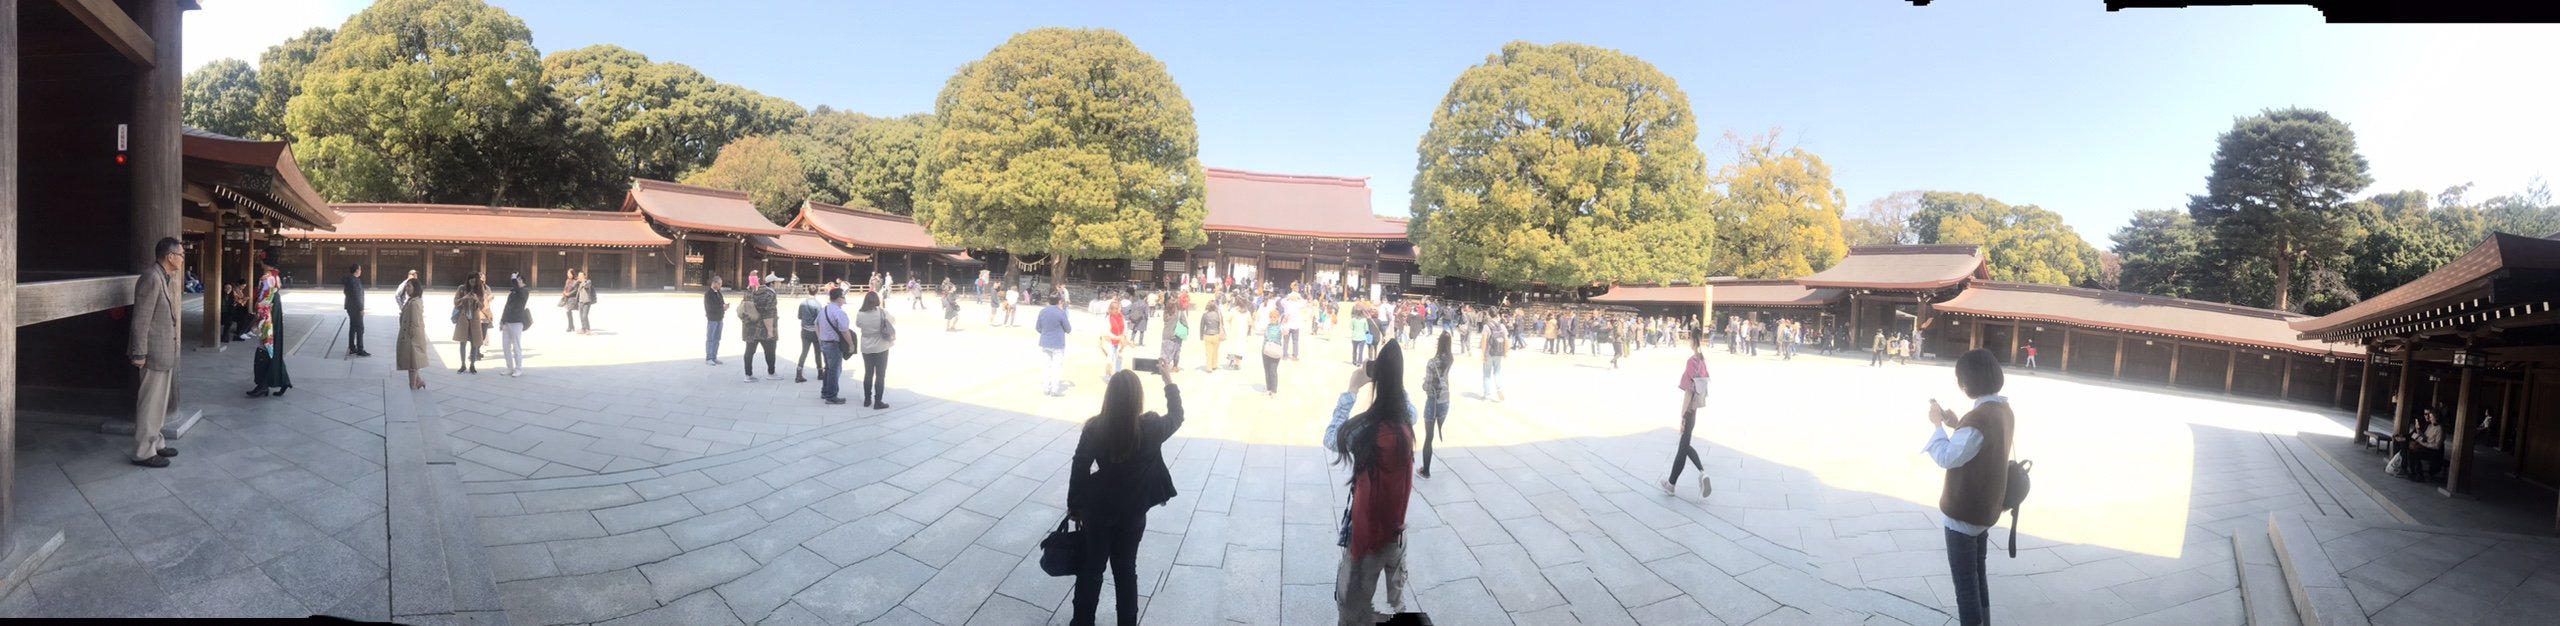 Tham quan Đền Meiji Jingu ở Tokyo Nhật Bản